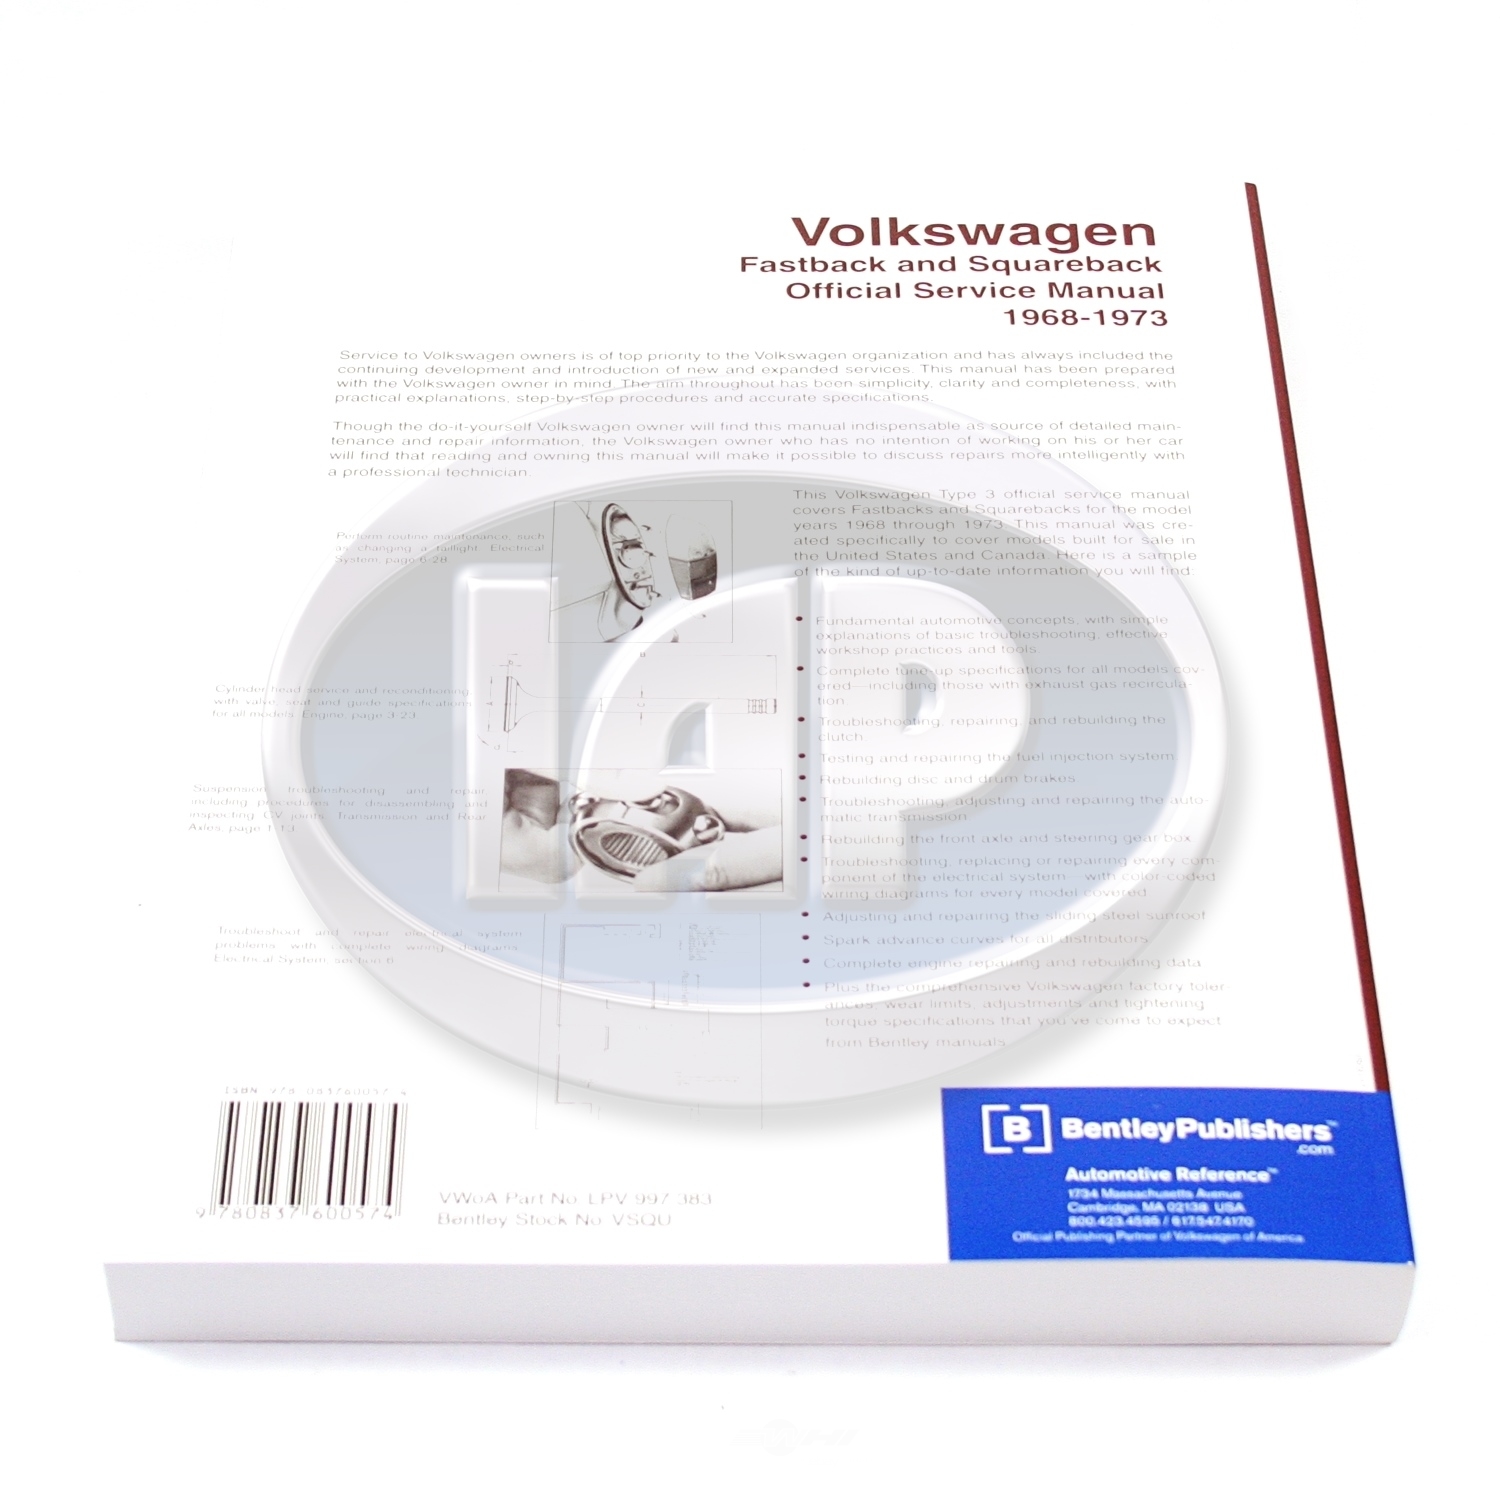 IAP/KUHLTEK MOTORWERKS - Repair Manual - KMS AC000921